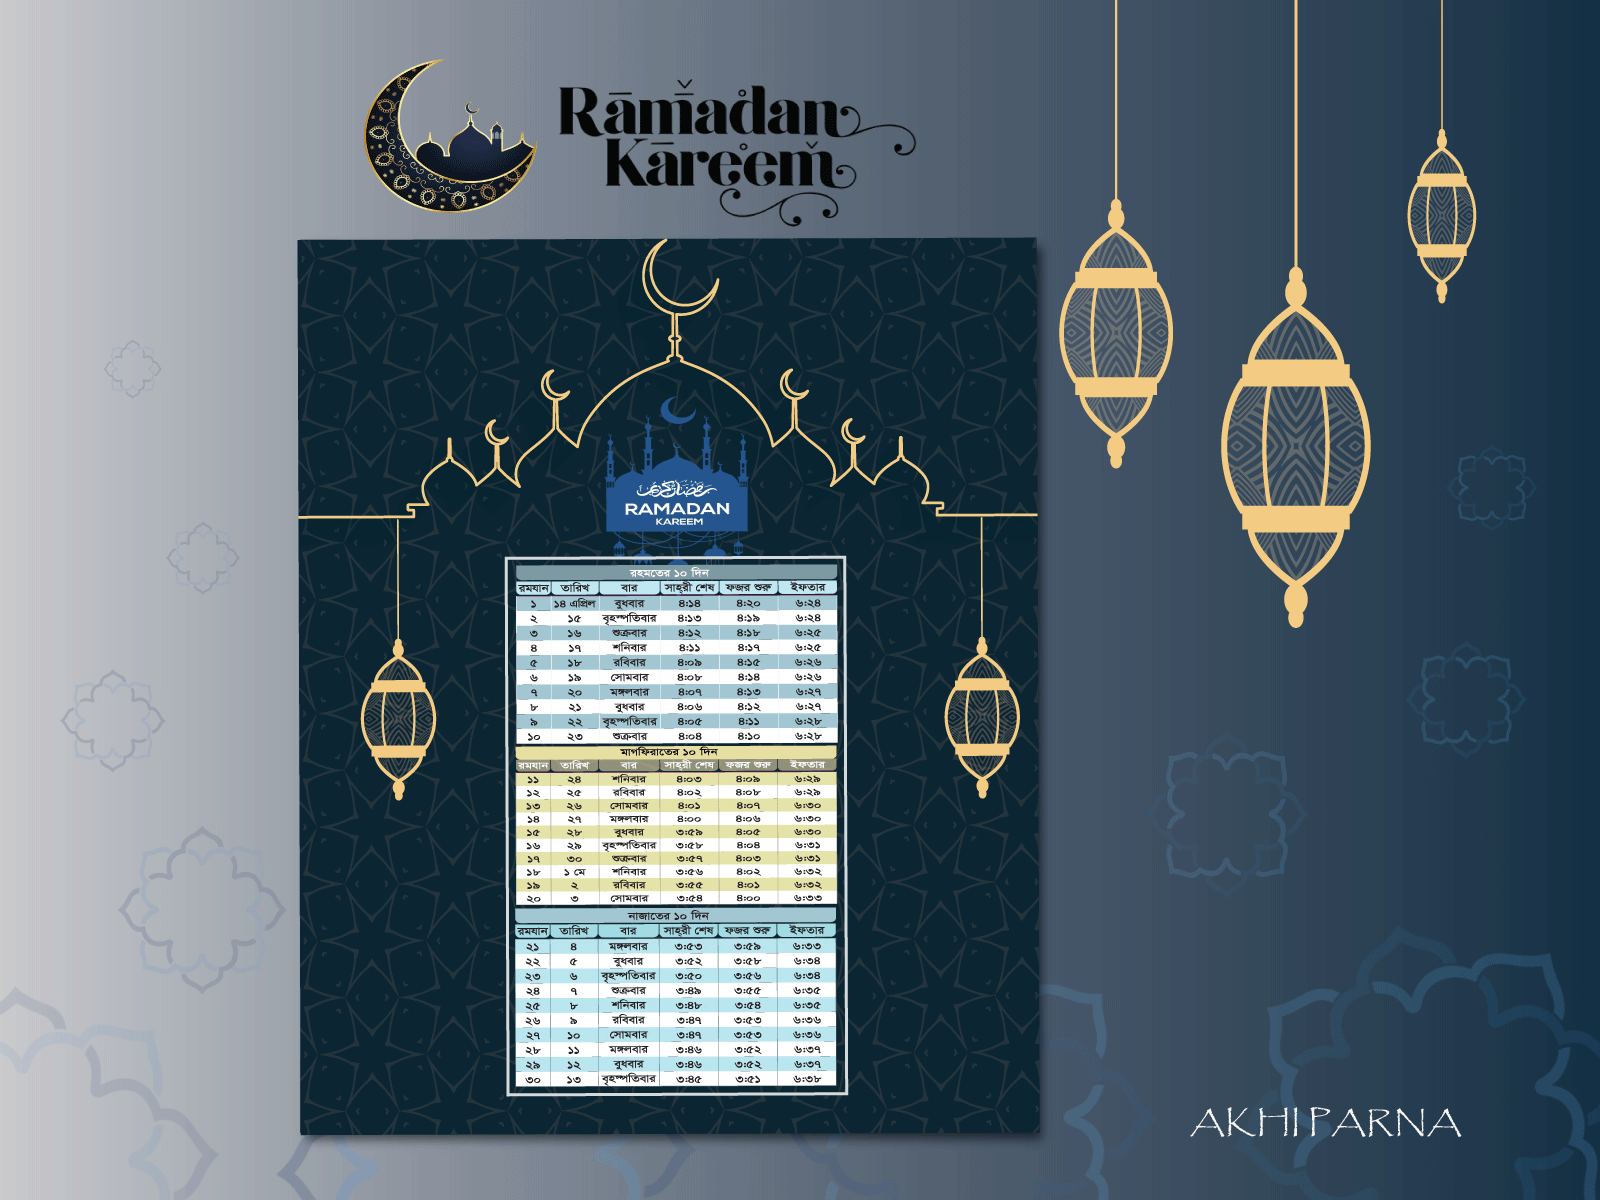 Ramadan Calendar 2021 calendar graphicdesign ramadan kareem